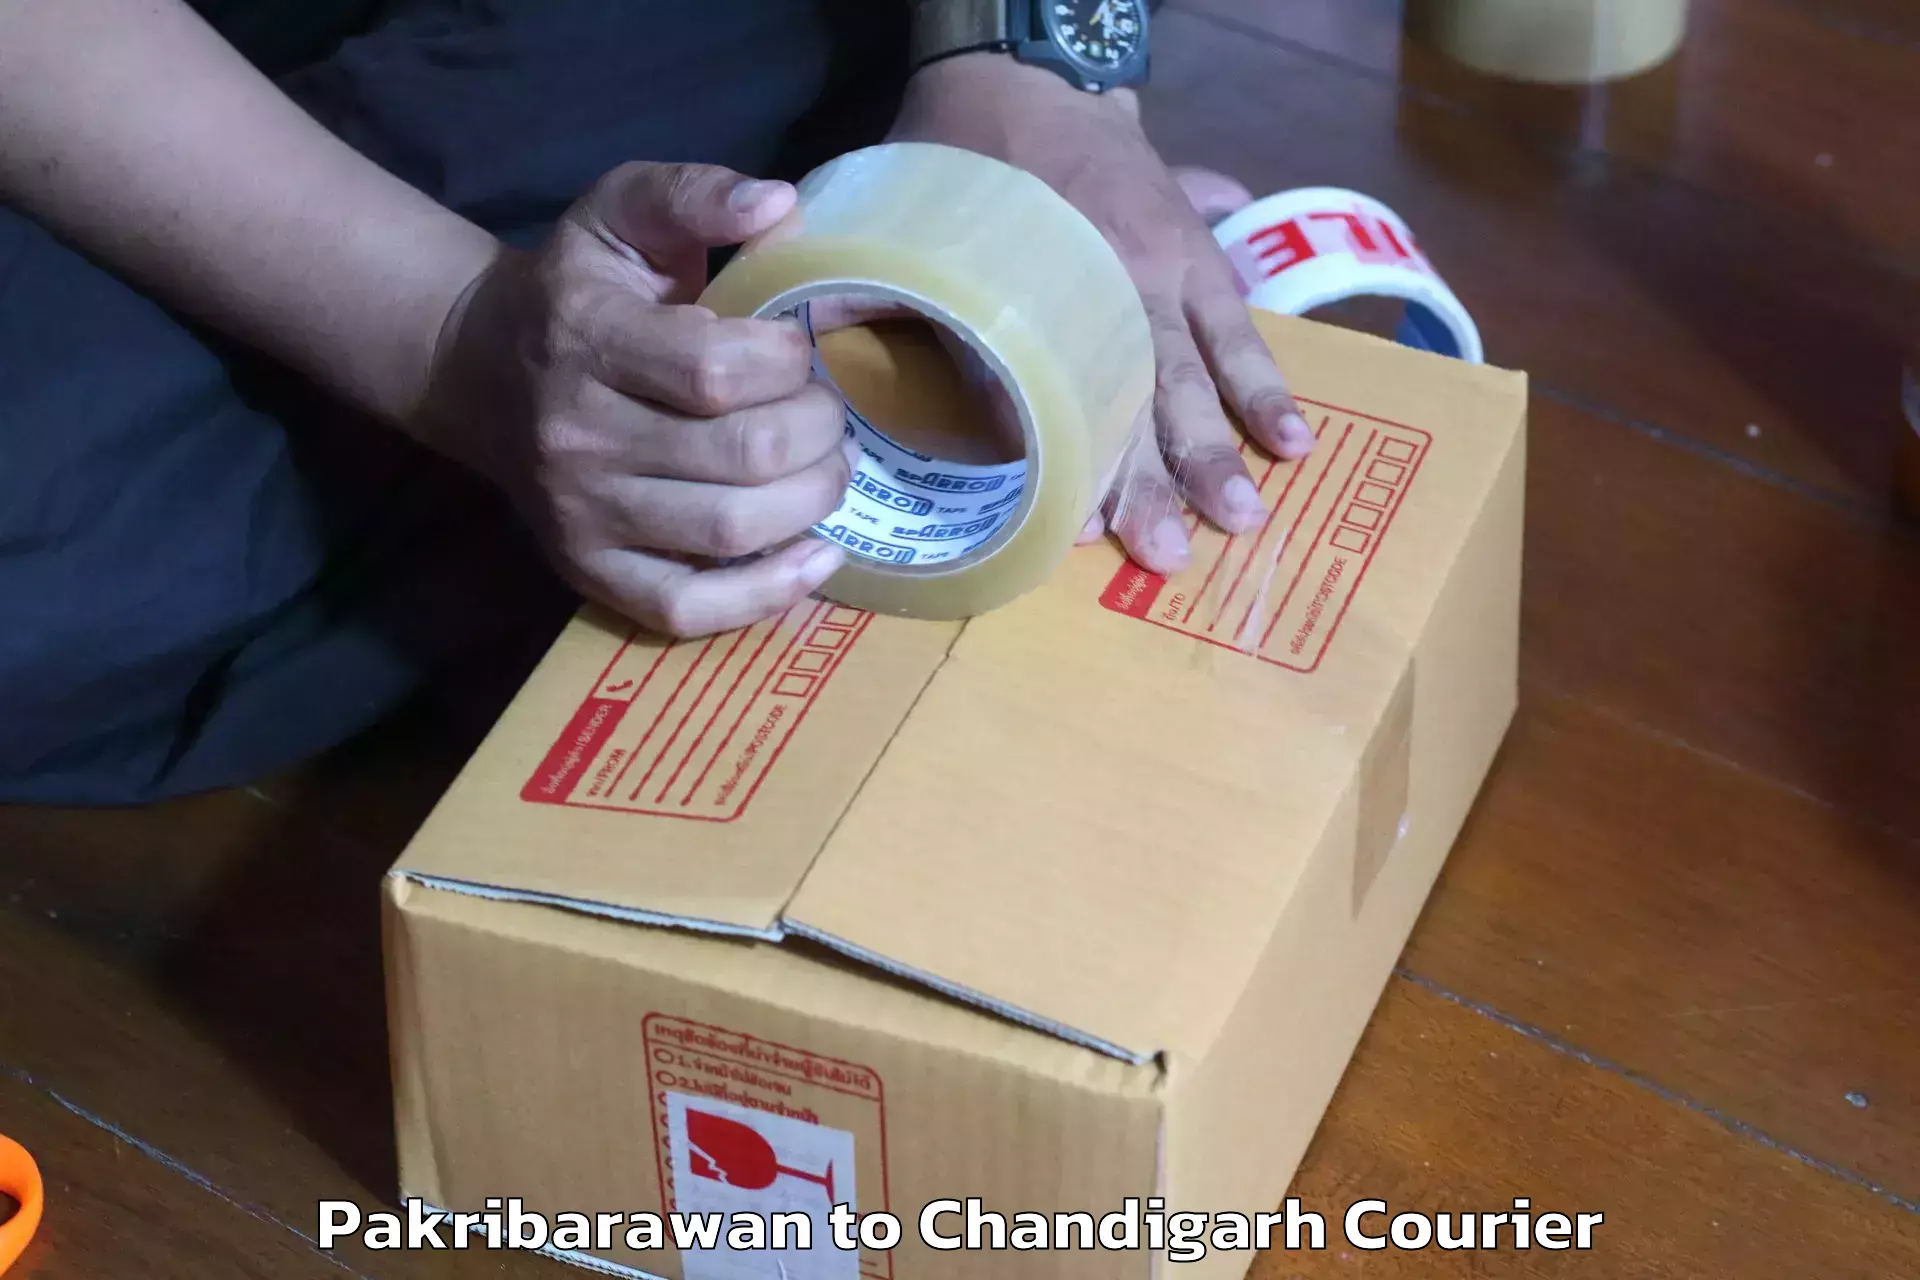 Skilled furniture movers Pakribarawan to Chandigarh